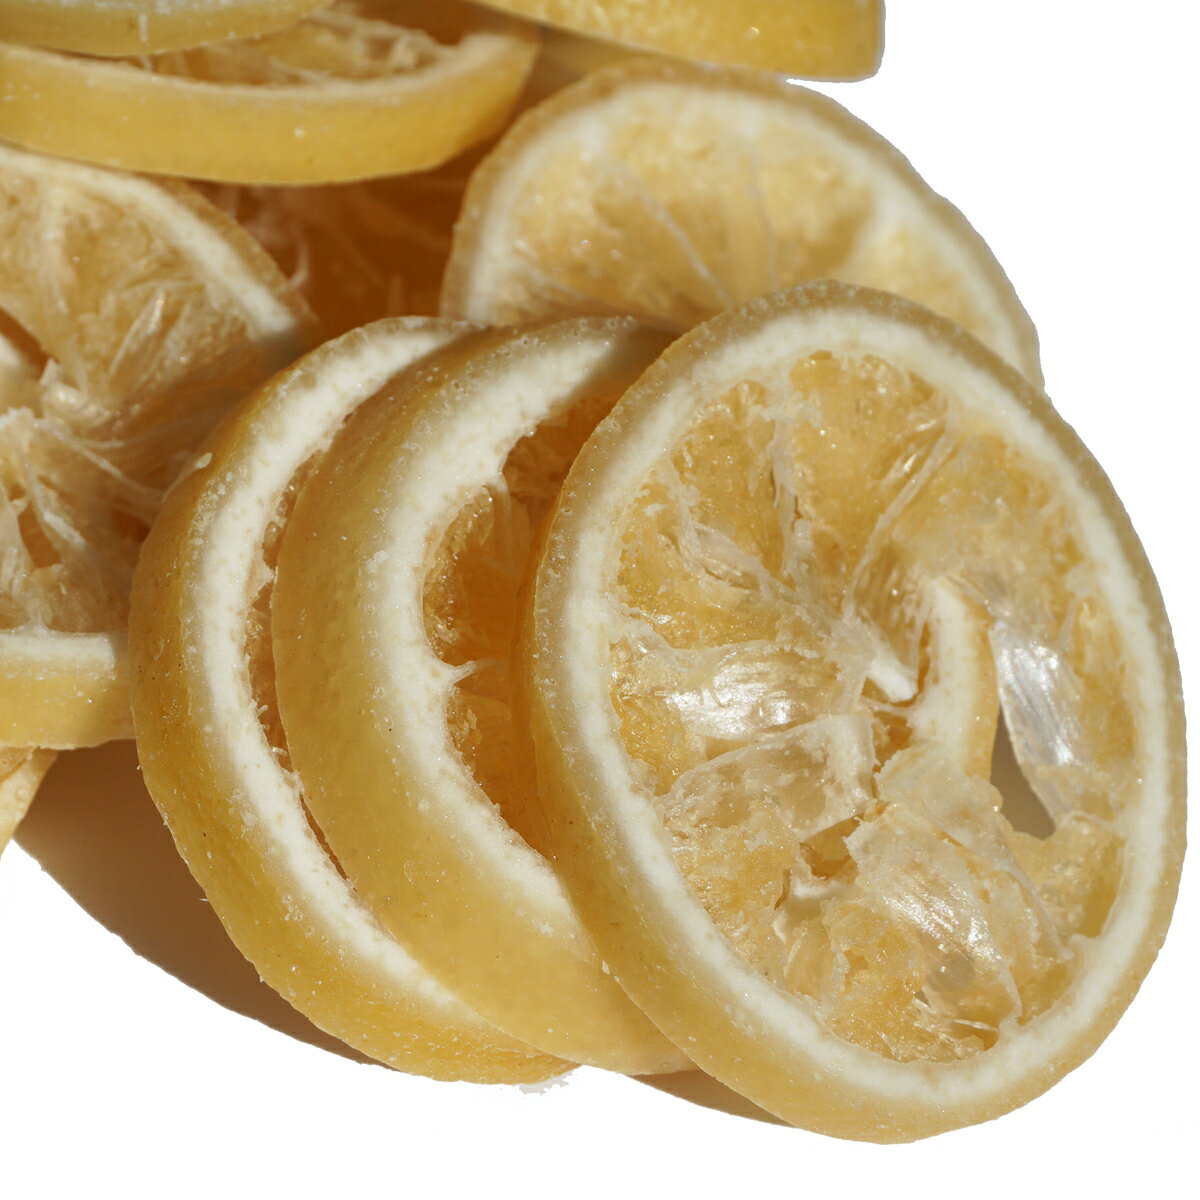 タイ産レモンを使用し、輪切りカットをしました。香料は使用しておらず自然な味わいを感じる上品なレモンスライスです。 タイ産レモンを使用し、輪切りカットをしました。香料は使用しておらず自然な味わいを感じる上品なレモンスライスです。 内容量：1000g 原産国：タイ 原材料：レモン・砂糖・酸味料（クエン酸）・保存料（亜硫酸塩） 形態：袋入り 賞味期限：300日 保存方法：直射日光・高温多湿を避け、冷暗所にて密閉保存下さい。 開封後はどうぞお早めにご使用下さい。 英名:LEMON 和漢名:香檬、香挑（中国）、檸檬（日本） 科名：ミカン科の常緑性小高木 部位：果皮 果皮から採るオイルのほかに、果汁を濃縮する際に回収されるエッセンスオイルや水溶性の回収香を持っています。 これは量的には微量ですが、香気が果皮とは異なるジューシーな特徴をもつため、最近ではこの部分の利用度も高まっています。 レモンには独特の香気がありますが、果汁には香気成分は少なく、大部分は果皮中の精油によるものです。 果皮には直径約1ミリの油胞が密生（1&#13216;あたり80〜100粒）しており、この中に精油が含まれています。 この中の香気成分としては130ほどの種類が知られていますが、量的にはほかの柑橘類と同様、90％以上をテンペル系炭化水素が占めます。 その香りを特徴づけているのは精油の4〜5％を占める含酸素化合物で、これは他の柑橘類に比べ2倍以上の含有率になります。 その大部分はシトラールであり、これがレモンの香気を最も特徴づけています。 果皮にはこの他の芳香成分や、ペクチン、フラバノン配糖体の一種であるシトロニンなどが含まれています。 果汁をしぼってジュースに、また輪切りにしてサラダや肉・魚料理、紅茶に添えなどは日本でもおなじみの使い方。 またレモン酒やほかの果実酒作りにもレモンは欠かせません。 レモンには酸化防止効果もあり、香味料としての用途は多岐にわたります。 レモンの皮を砂糖で煮つめ、表面に砂糖の結晶ができたものはキャンディード・レモンピールと呼ばれ、酸味が強く、独特の芳香があります。 このためフルーツケーキをはじめ製菓用に広く使われています。 工業的には、レモンの皮の精油を抽出したレモン油が、柑橘類のなかでもオレンジ油とならんで重視されています。 その採油法も古くからいろいろ工夫されてきましたが、現在は圧搾法がよく使われています。 このレモンオイルはさわやかでフレッシュ、フルーティーな香りをもっているため食品用のフレーバー、香粧品、室内芳香剤、洗剤などに広く使われています。 なかでも食品用フレーバーの需要は多く、清涼飲料、冷菓、菓子、乳製品、ドレッシングなどの香りづけに重要な位置を占めています。 ただ、レモンオイルはそのままの状態では安定性などの面で問題がある為、オイルを抽出したエッセンスや、蒸留でテルペン系炭化水素を取り除いたテルペンレスオイルなどがよく用いられています。